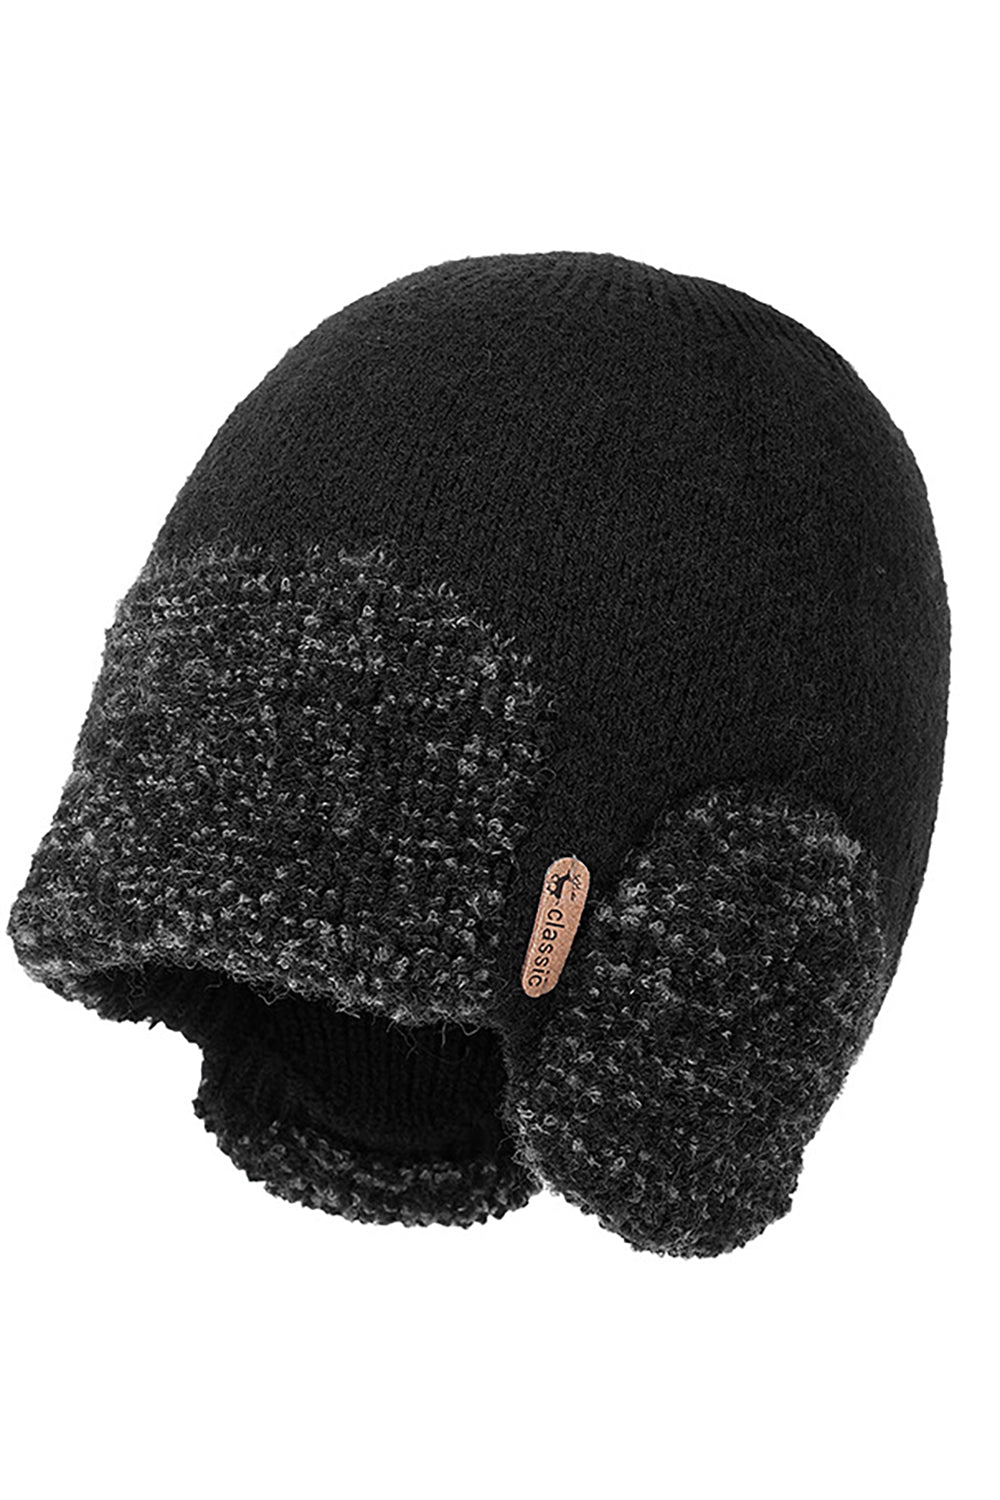 Chapeau chaud tricoté noir